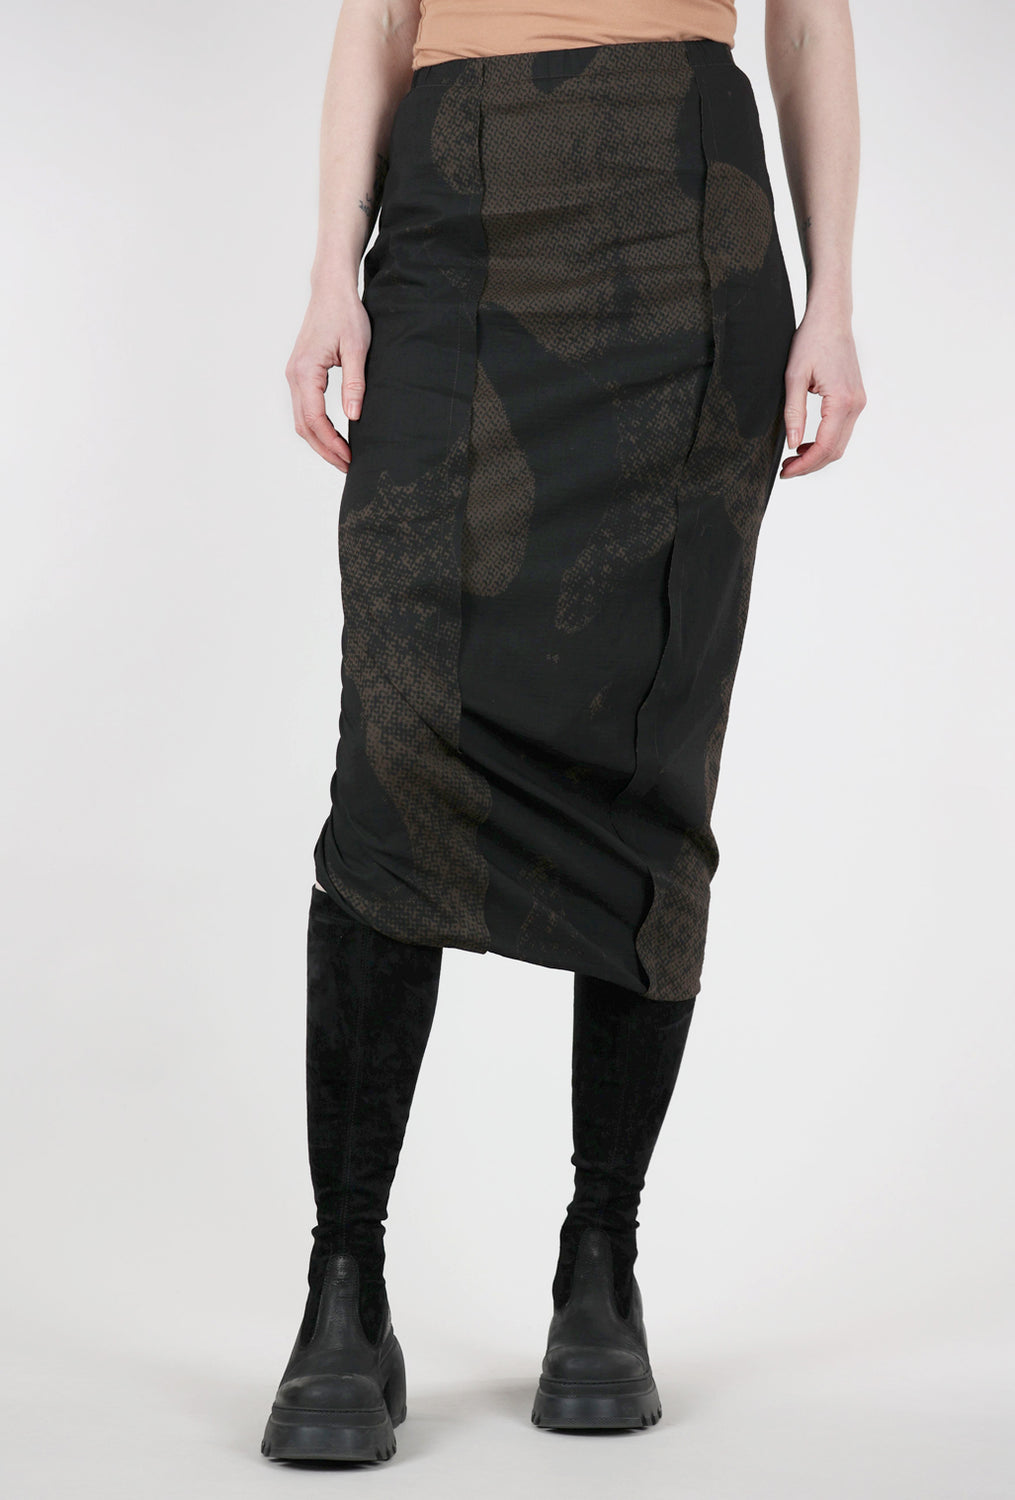 Rundholz Watermark Slim Skirt, Kaffee Print 